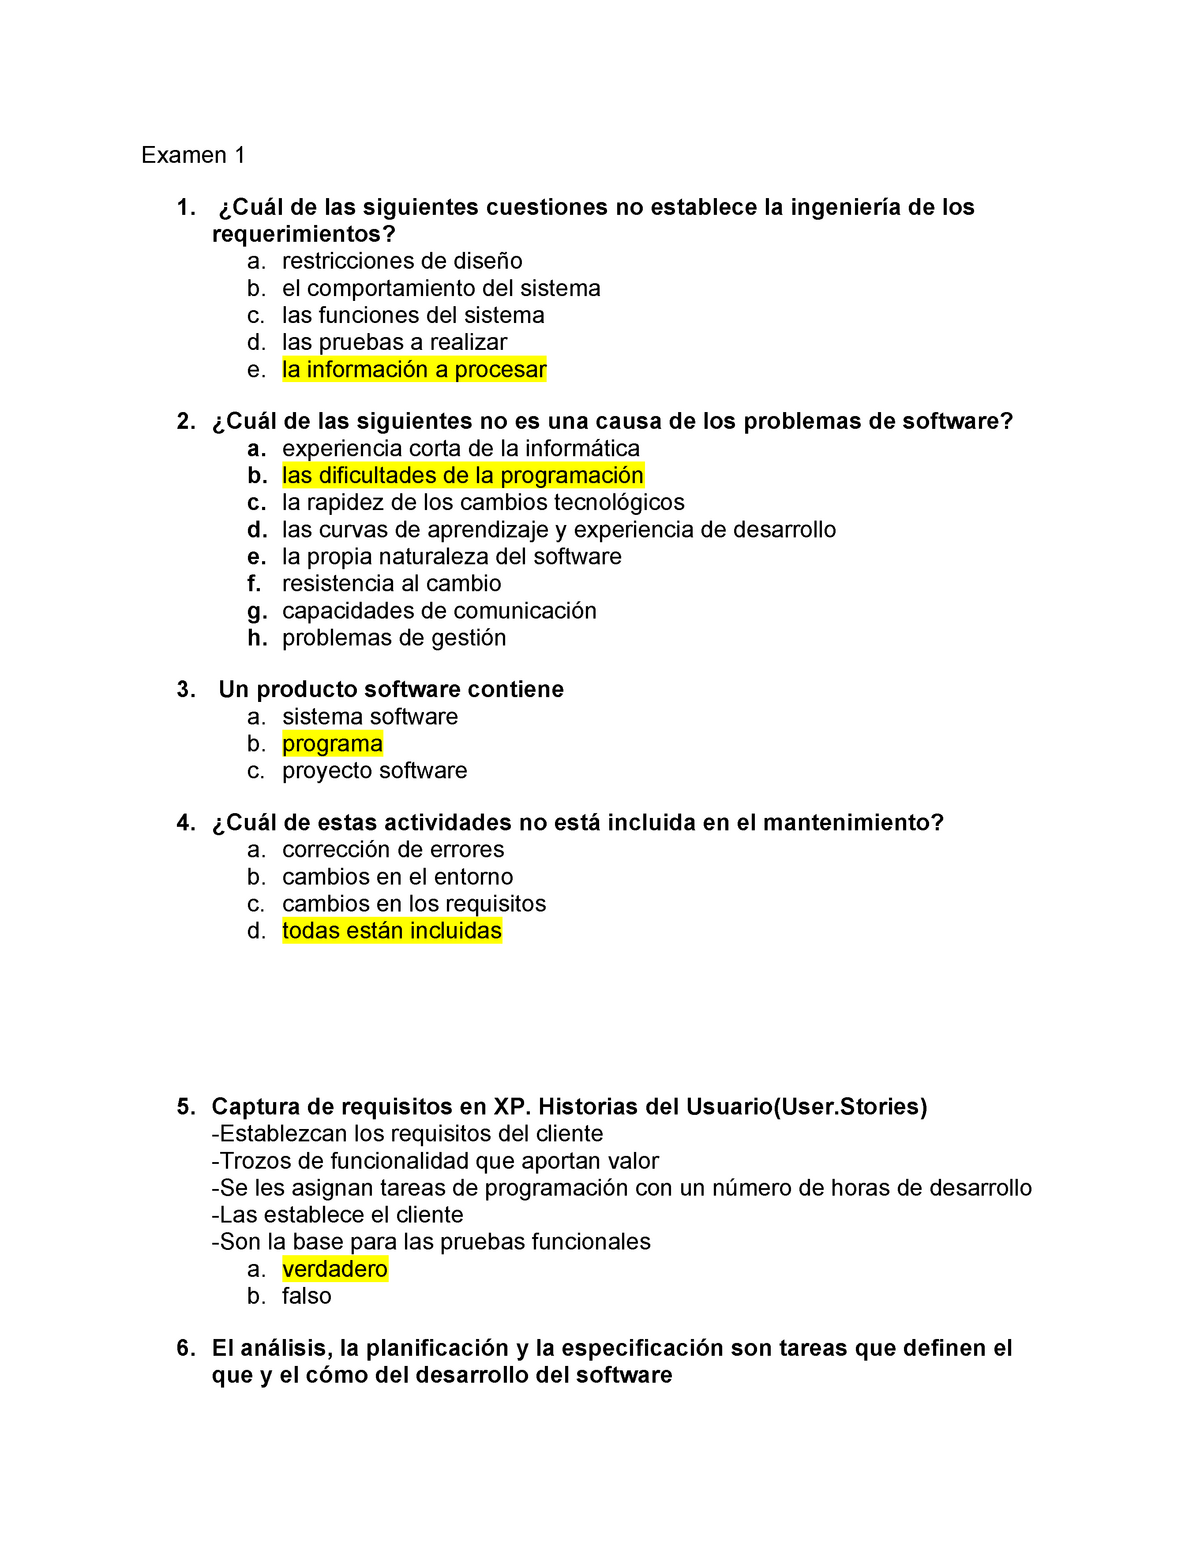 Examen De Muestra Practica 2012 Preguntas Y Respuestas Examen 2